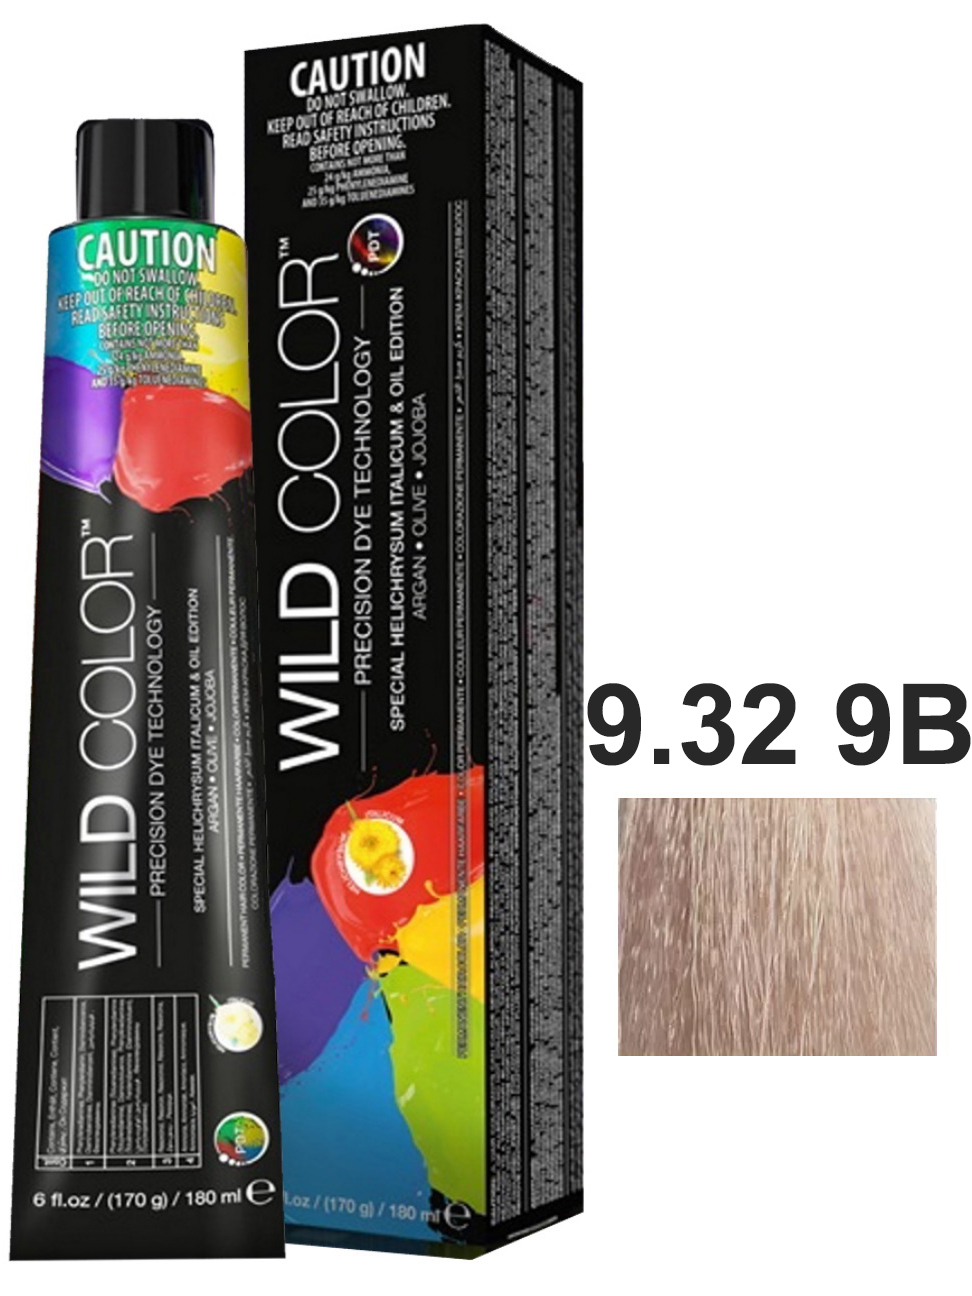 Крем-краска для волос WildColor PERMANENT COLOR 9.32 9B очень светлый блонд бежевый 180 мл